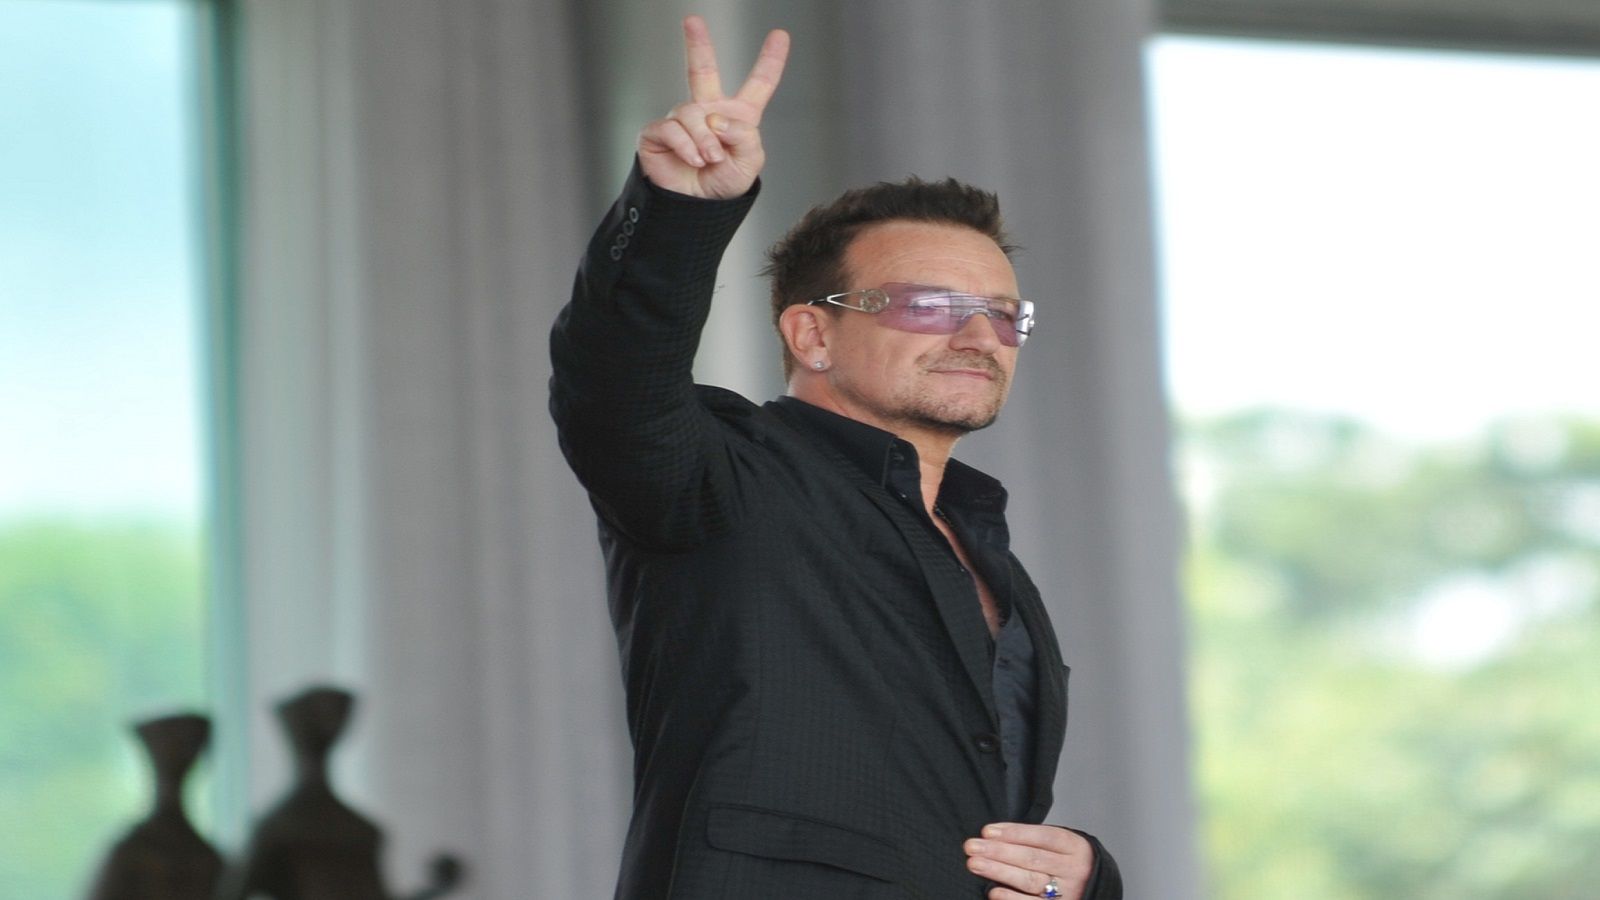 Perchè Bono Vox è stato proclamato Donna dell’Anno 2016 da Glamour?